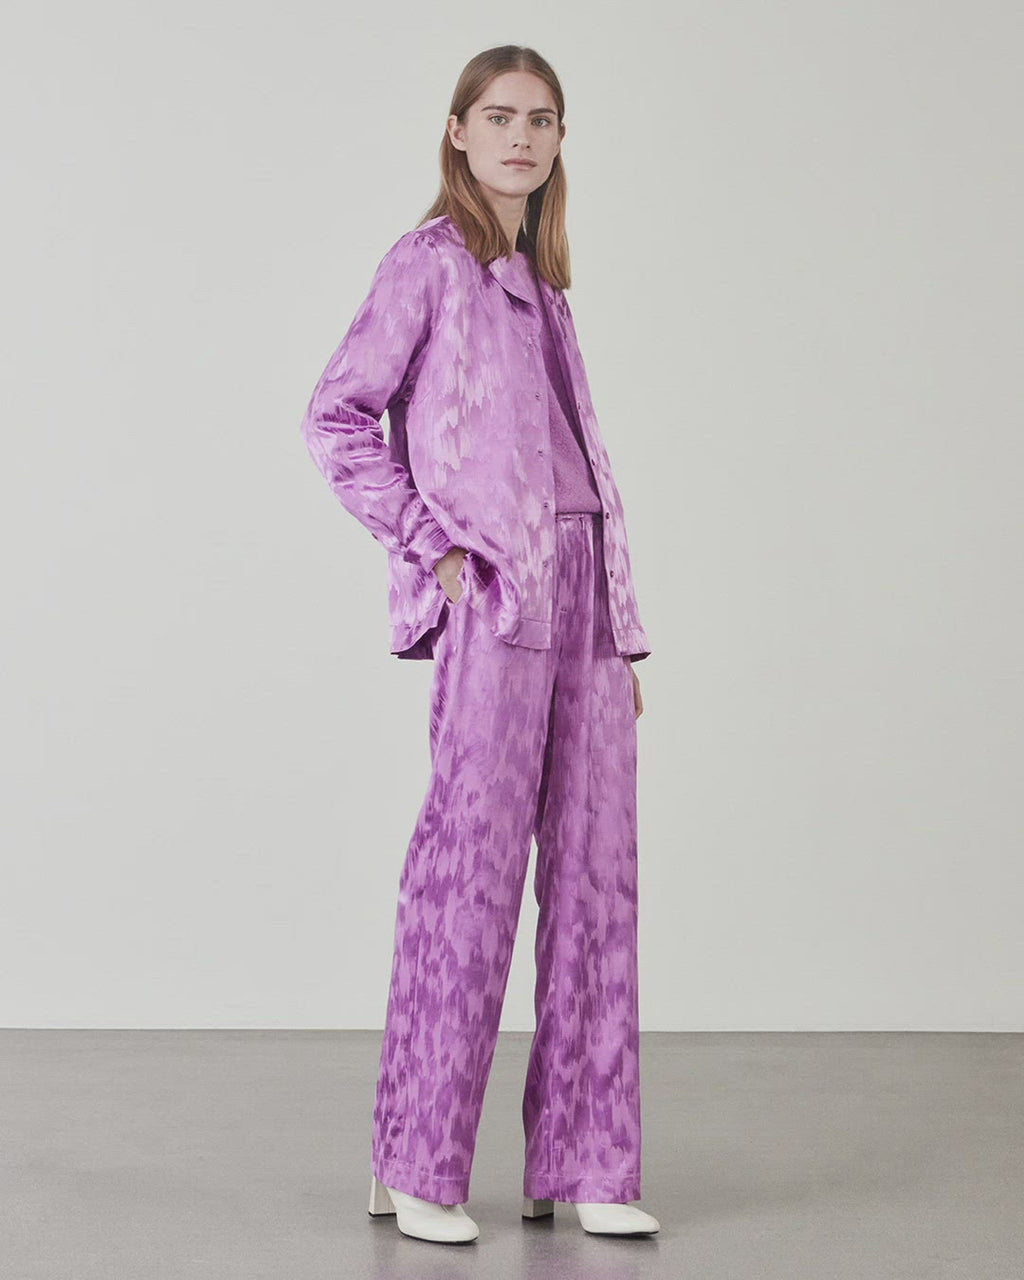 Lige, vide bukser i lilla med pyjamas-inspireret udtryk i mønstret satin. AbigaleMD pants har høj talje med beklædt elastik. Diskrete lommer i sidesømmen.  Køb matchende skjorte: AbigaleMD pants, i samme farve for at fuldende looket.